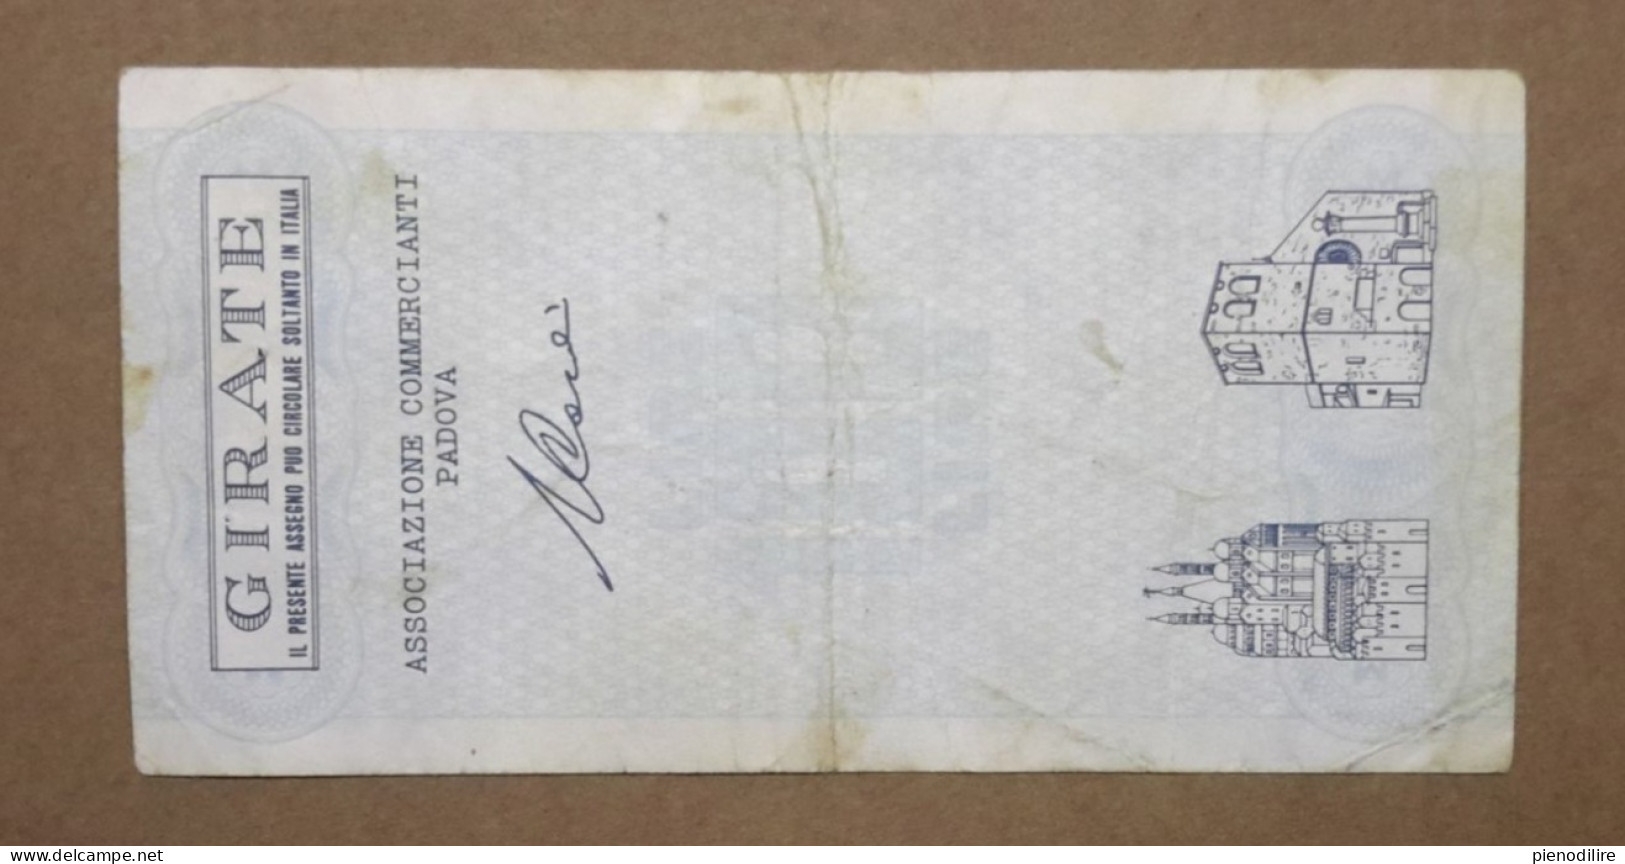 BANCA ANTONIANA DI PADOVA E TRIESTE, 100 Lire 13.06.1977 ASSOCIAZIONE COMMERCIANTI PADOVA (A1.72) - [10] Checks And Mini-checks